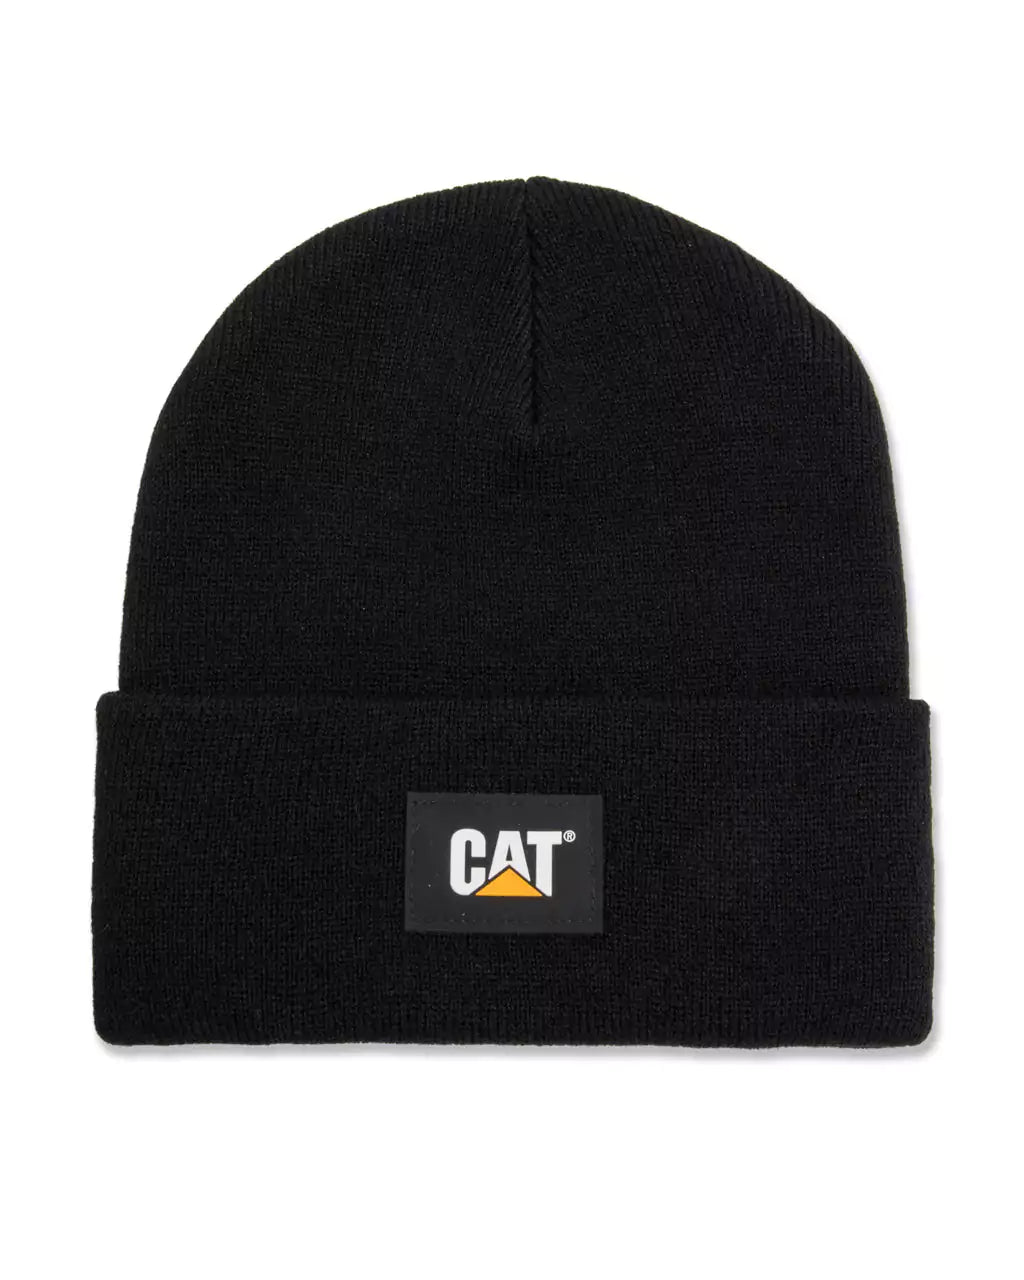 CAT Label Cuff Beanie - Black